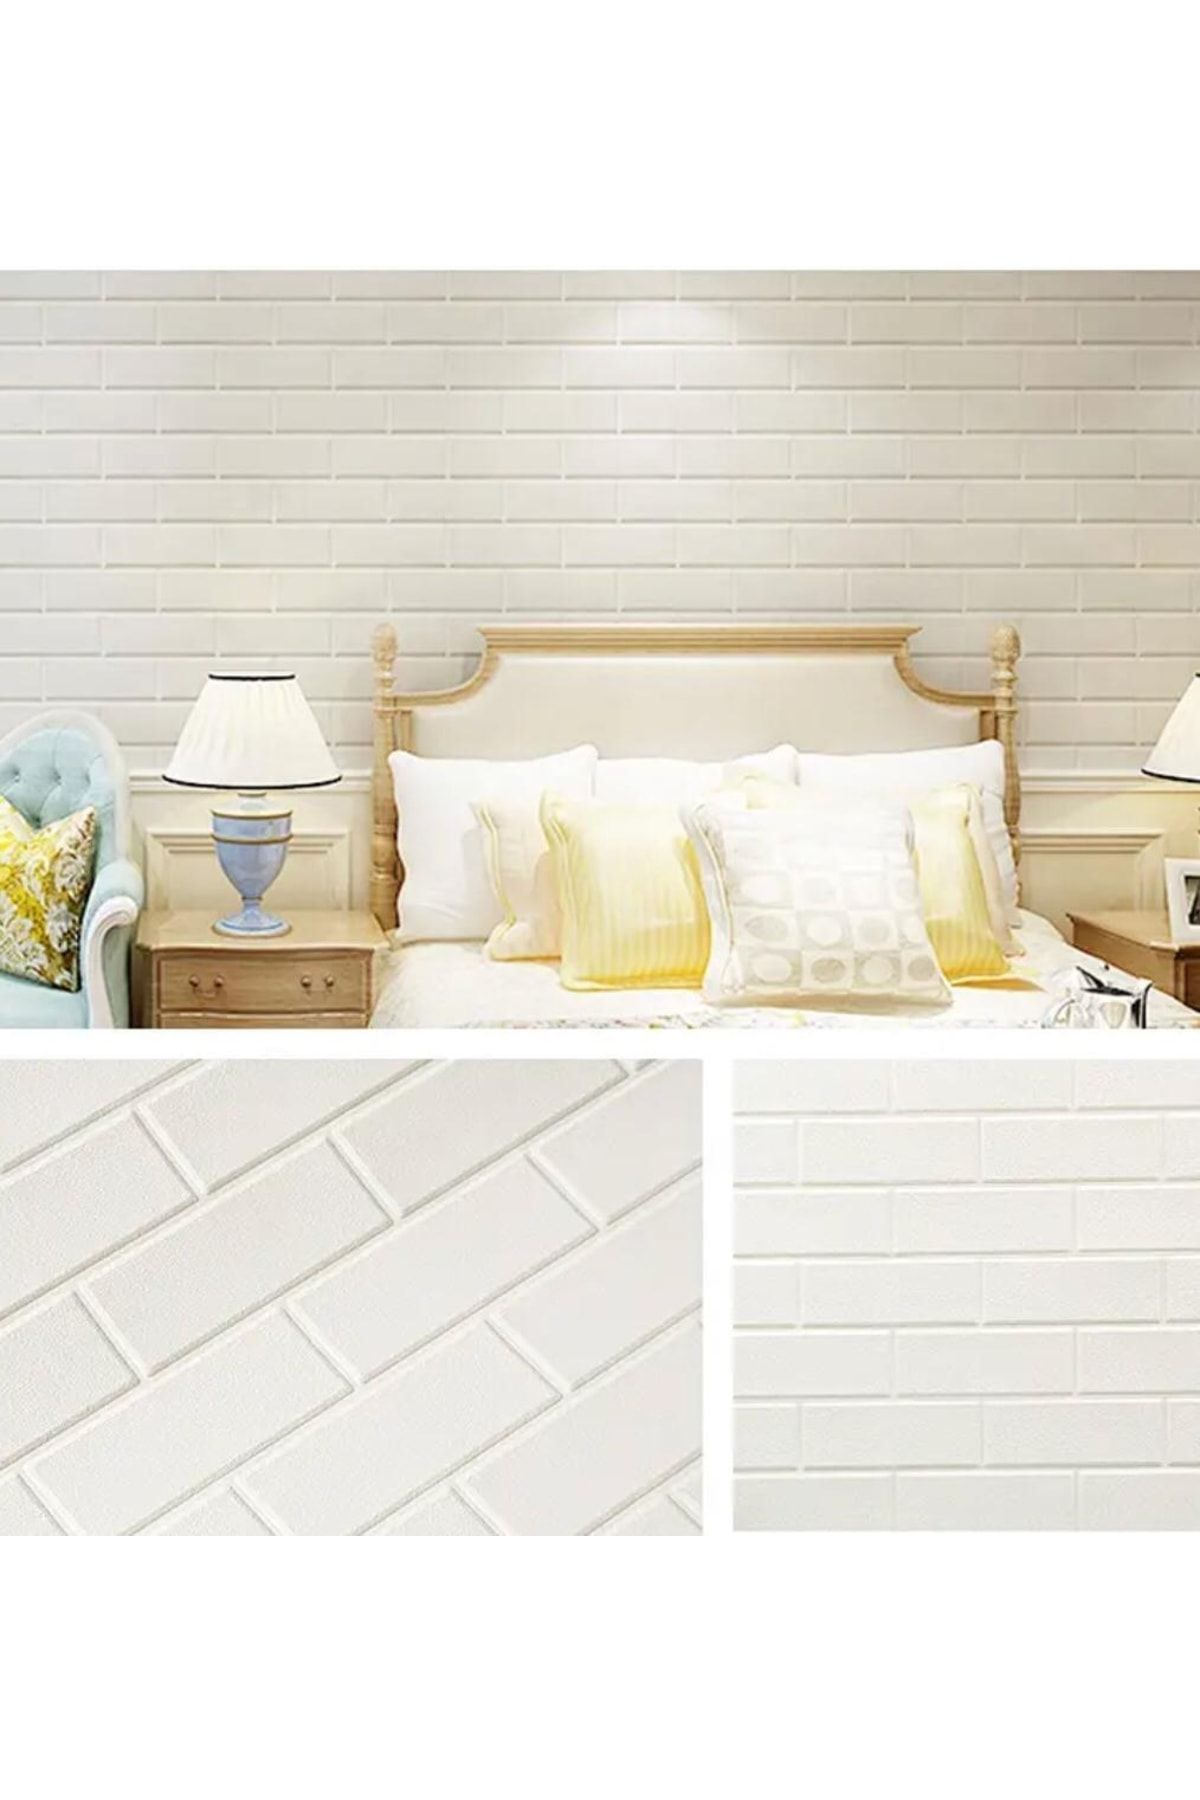 Renkli Duvarlar Nw63 Düz Beyaz Tuğla Arkası Yapışkanlı Esnek Silinebilir Banyo Duvar Paneli Duvar Kağıdı